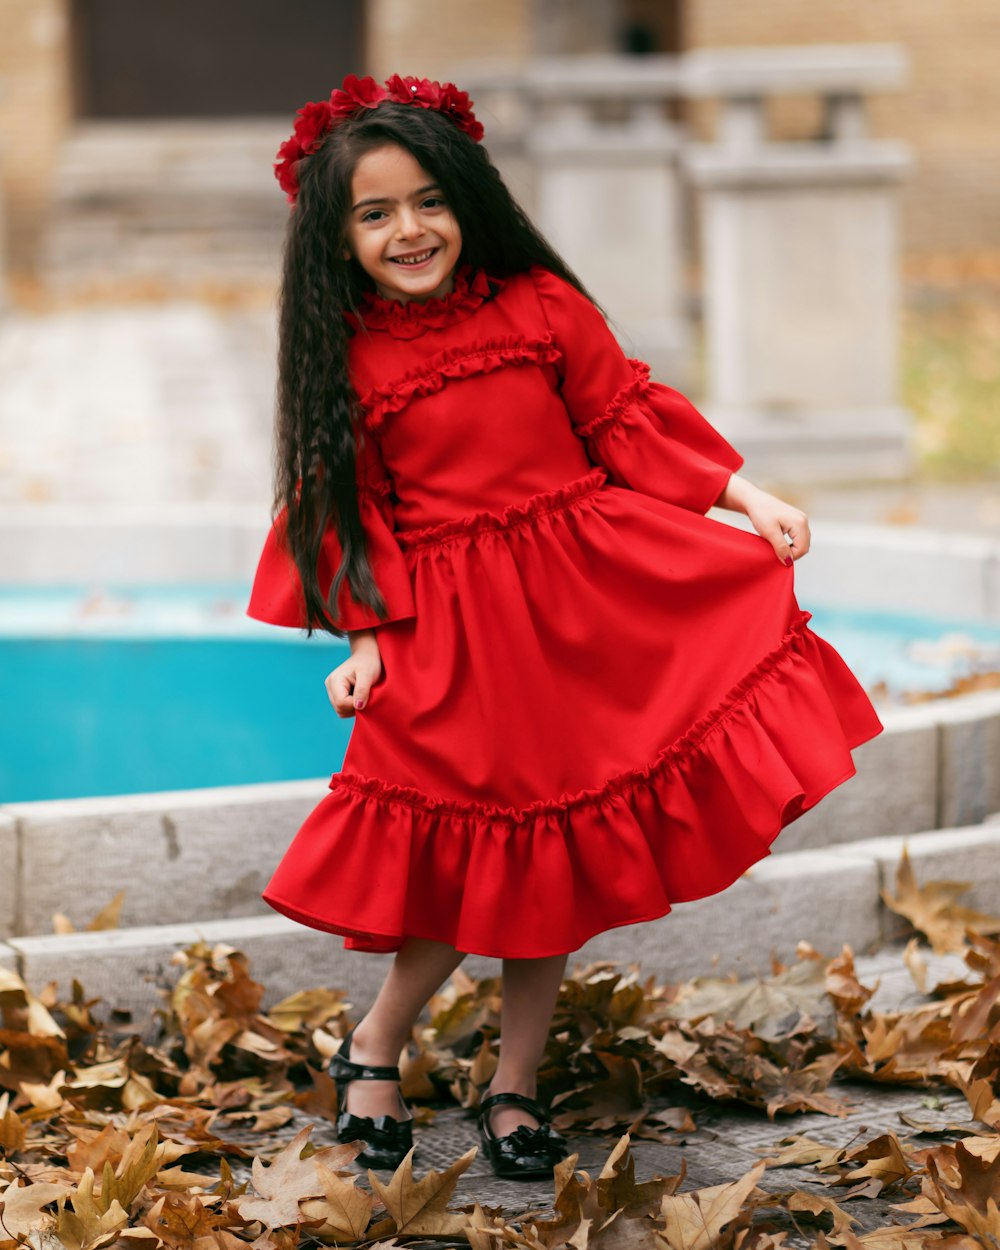 smiling girl holding her dress